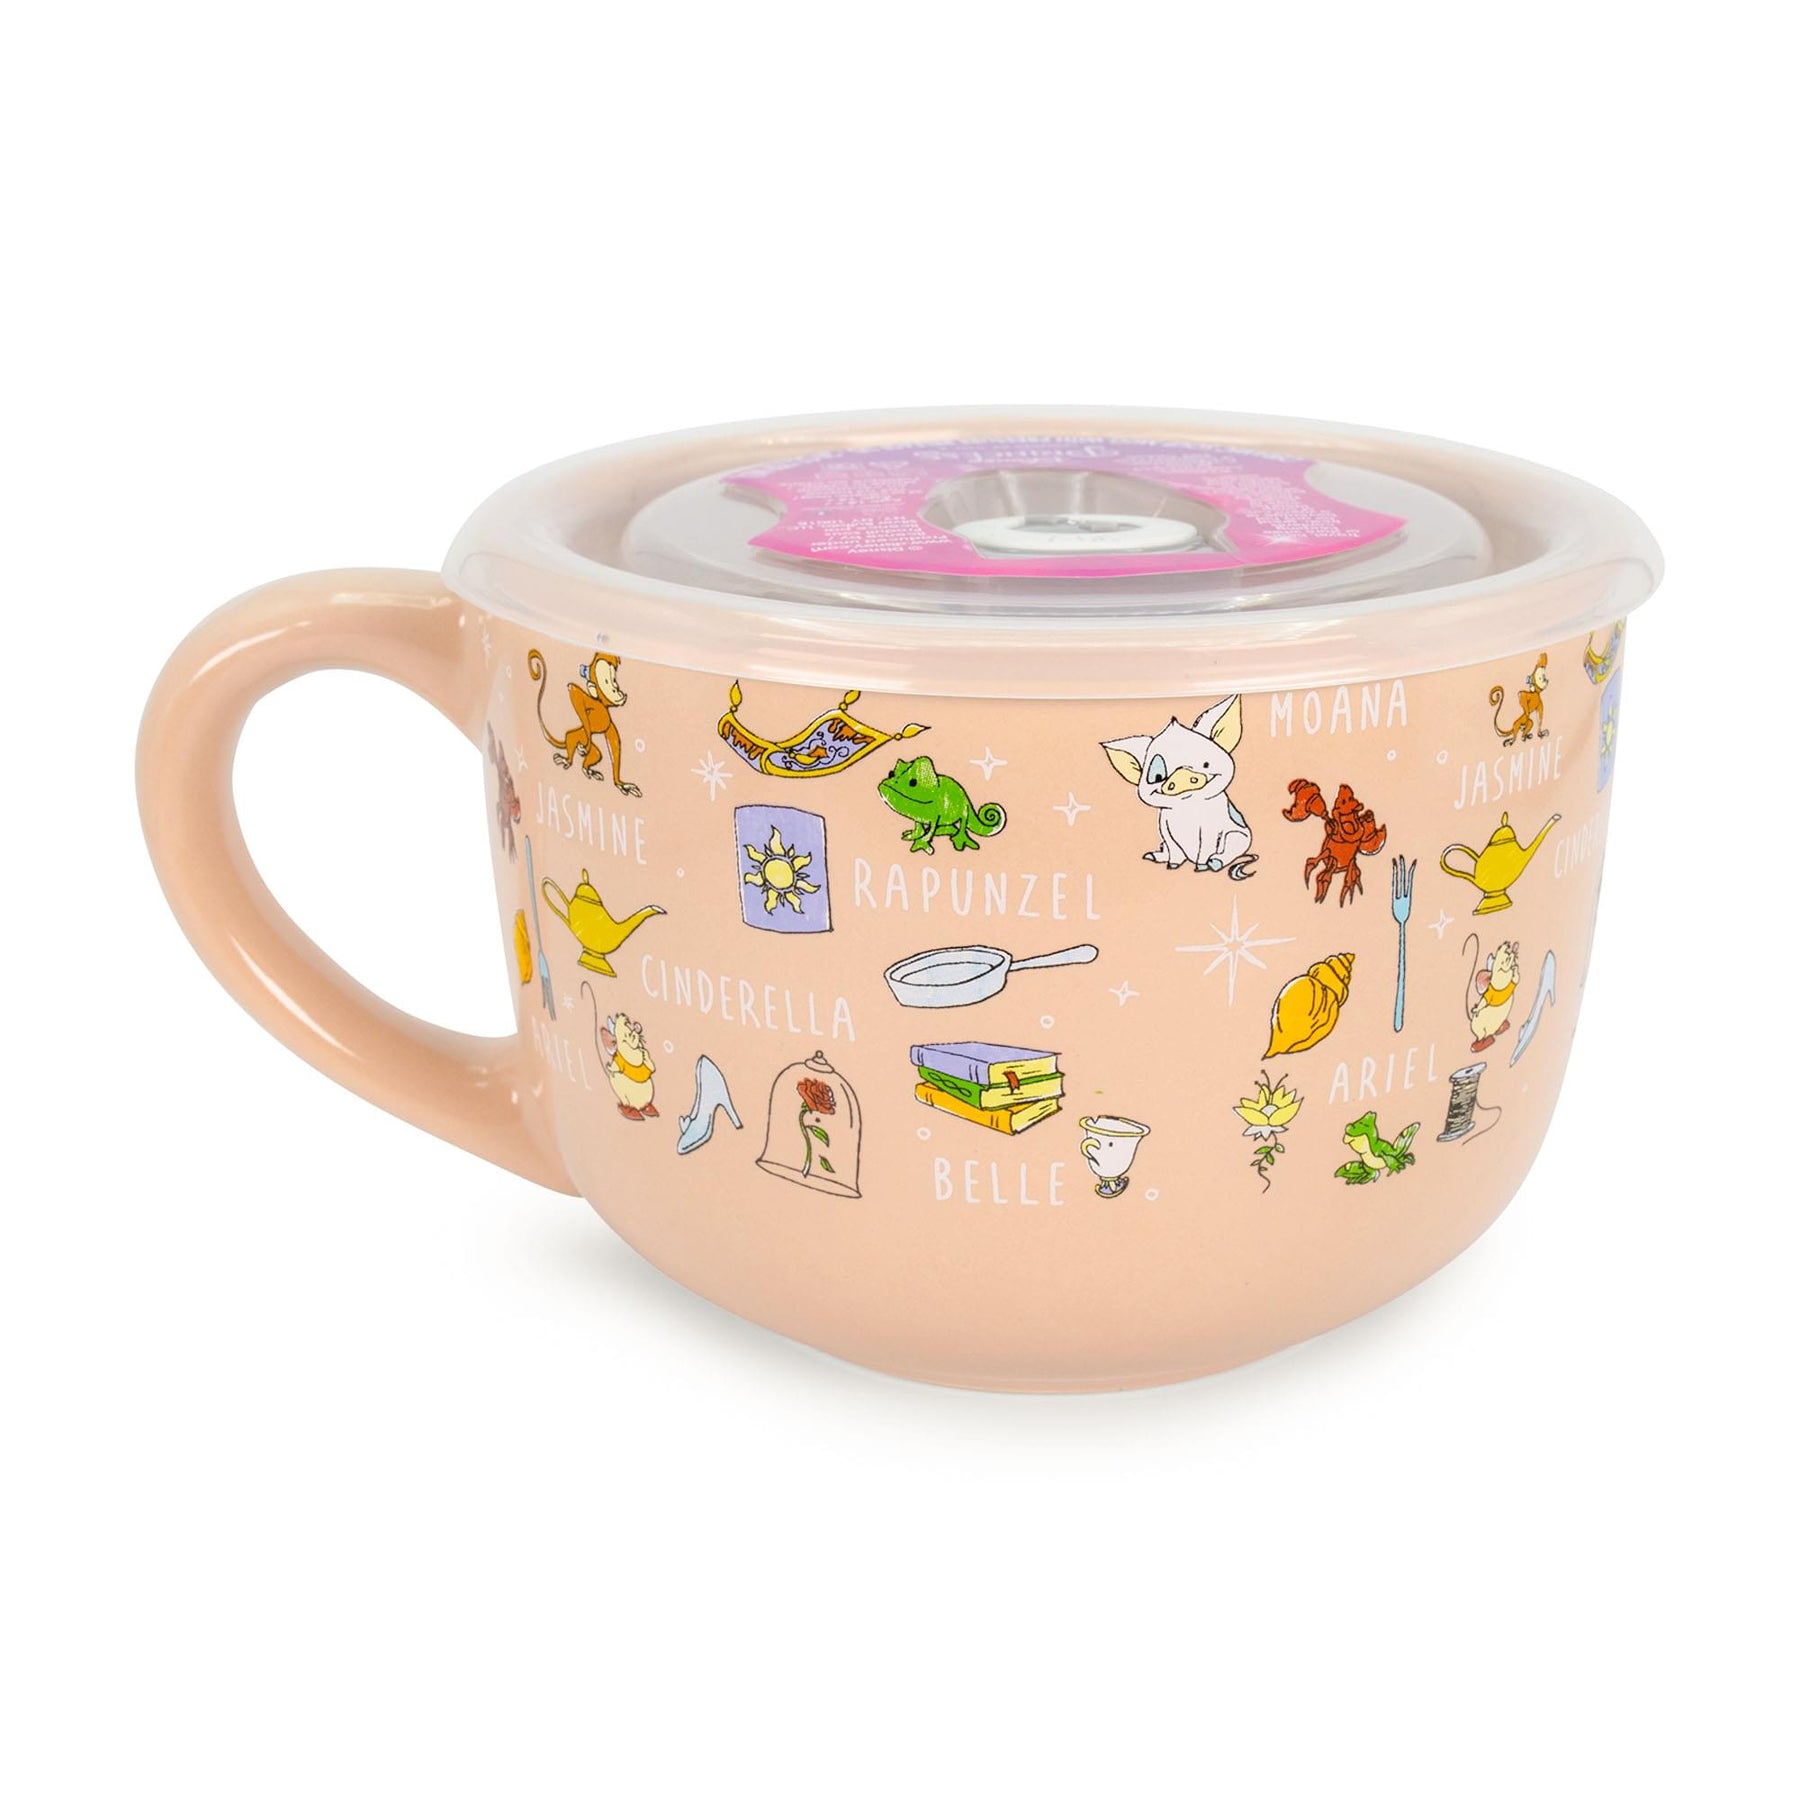 Disney Princess Ceramic Soup Mug with Vented Lid | Holds 24 Ounces